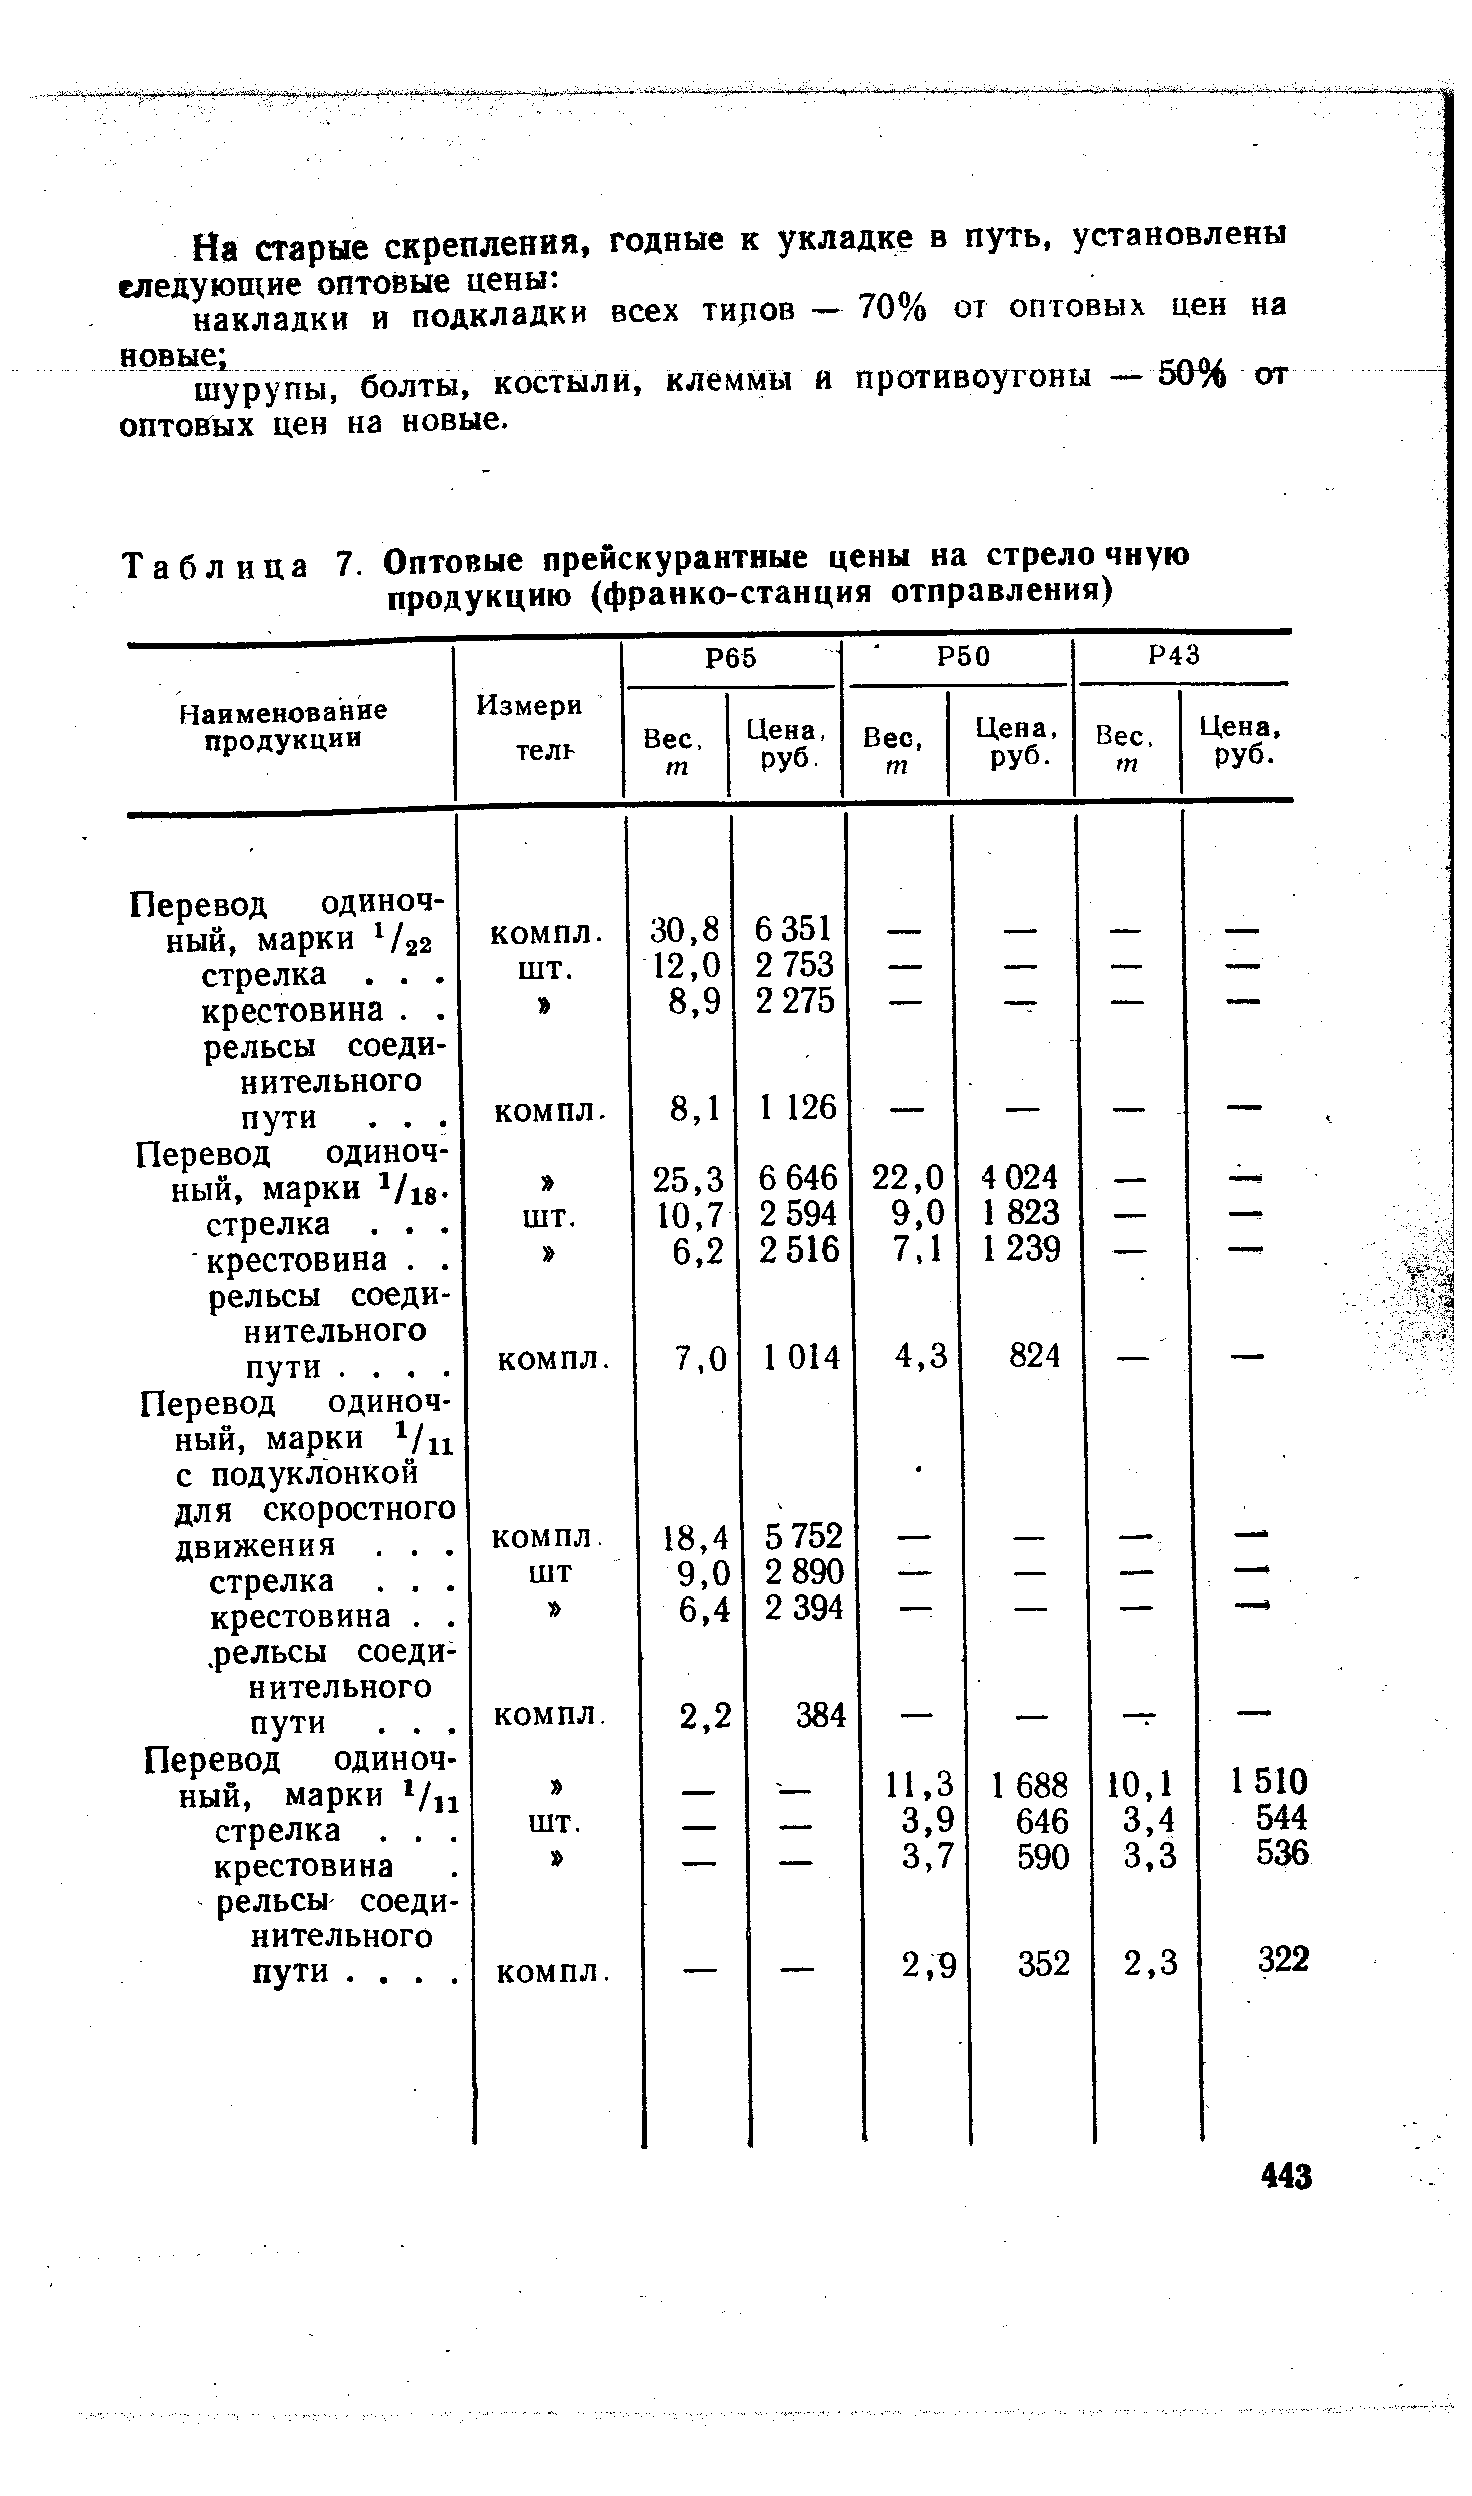 Таблица 7. Оптовые прейскурантные цены на стрело чную продукцию (франко-станция отправления)
